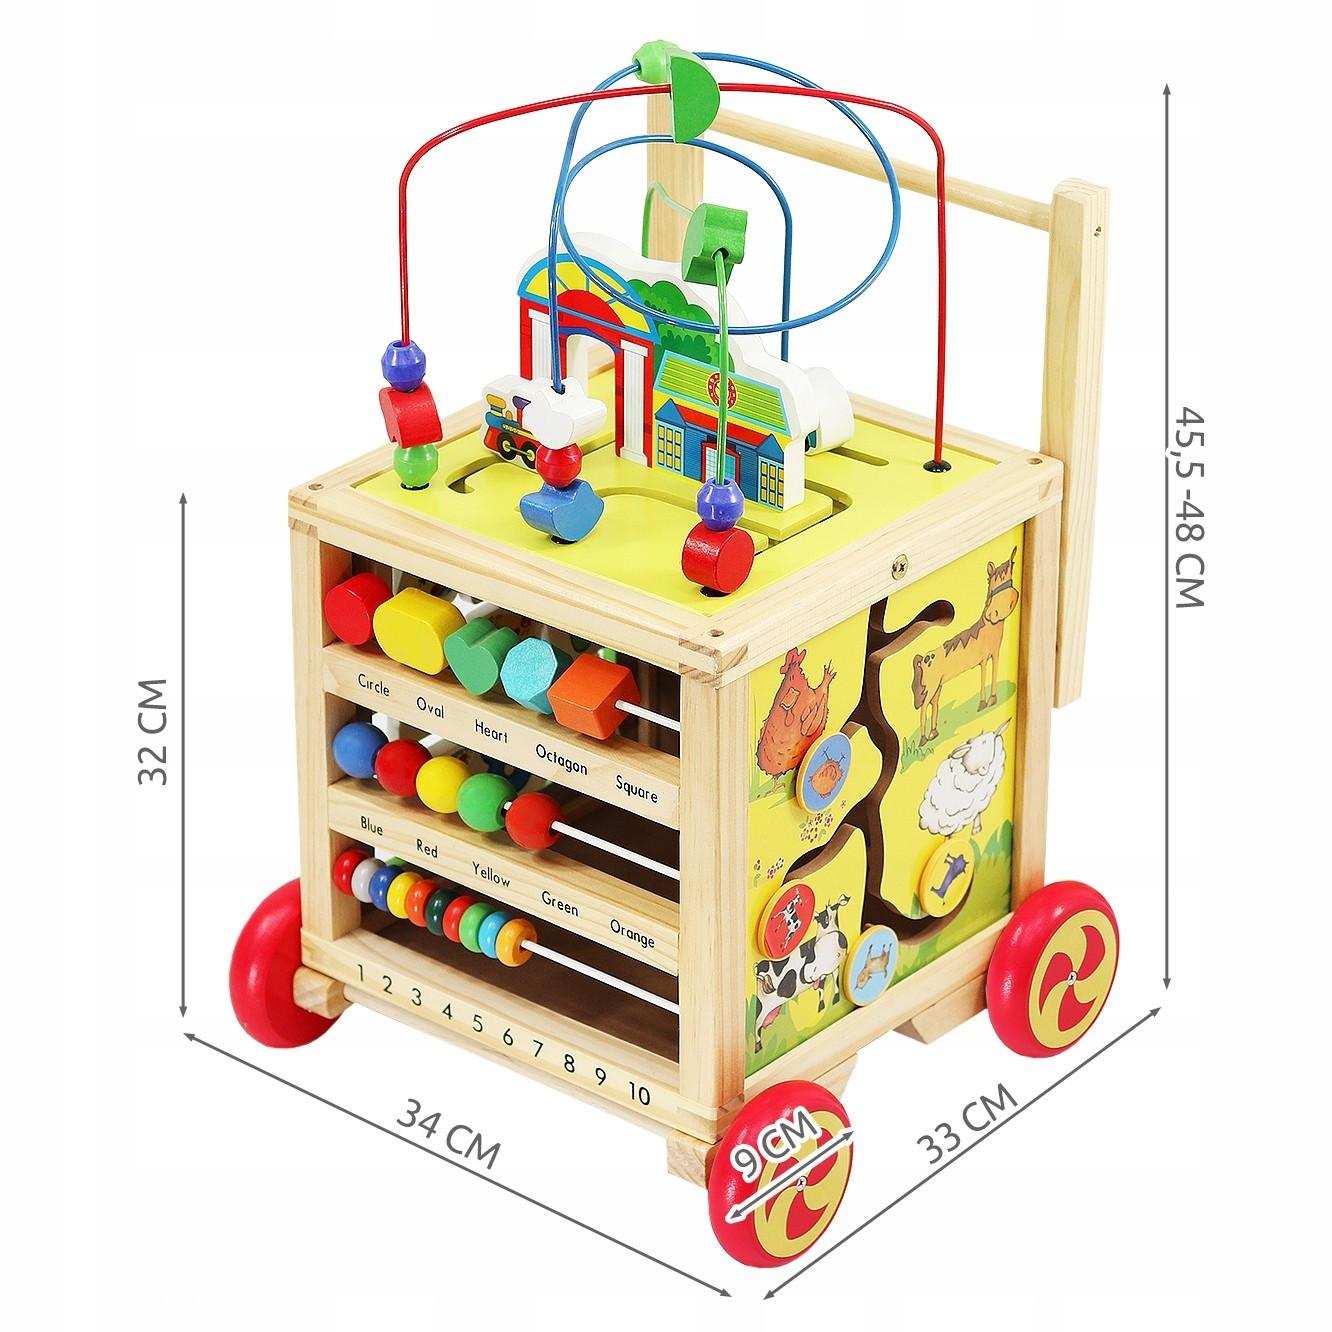 Gameloot  Holzwagen für Kinder 